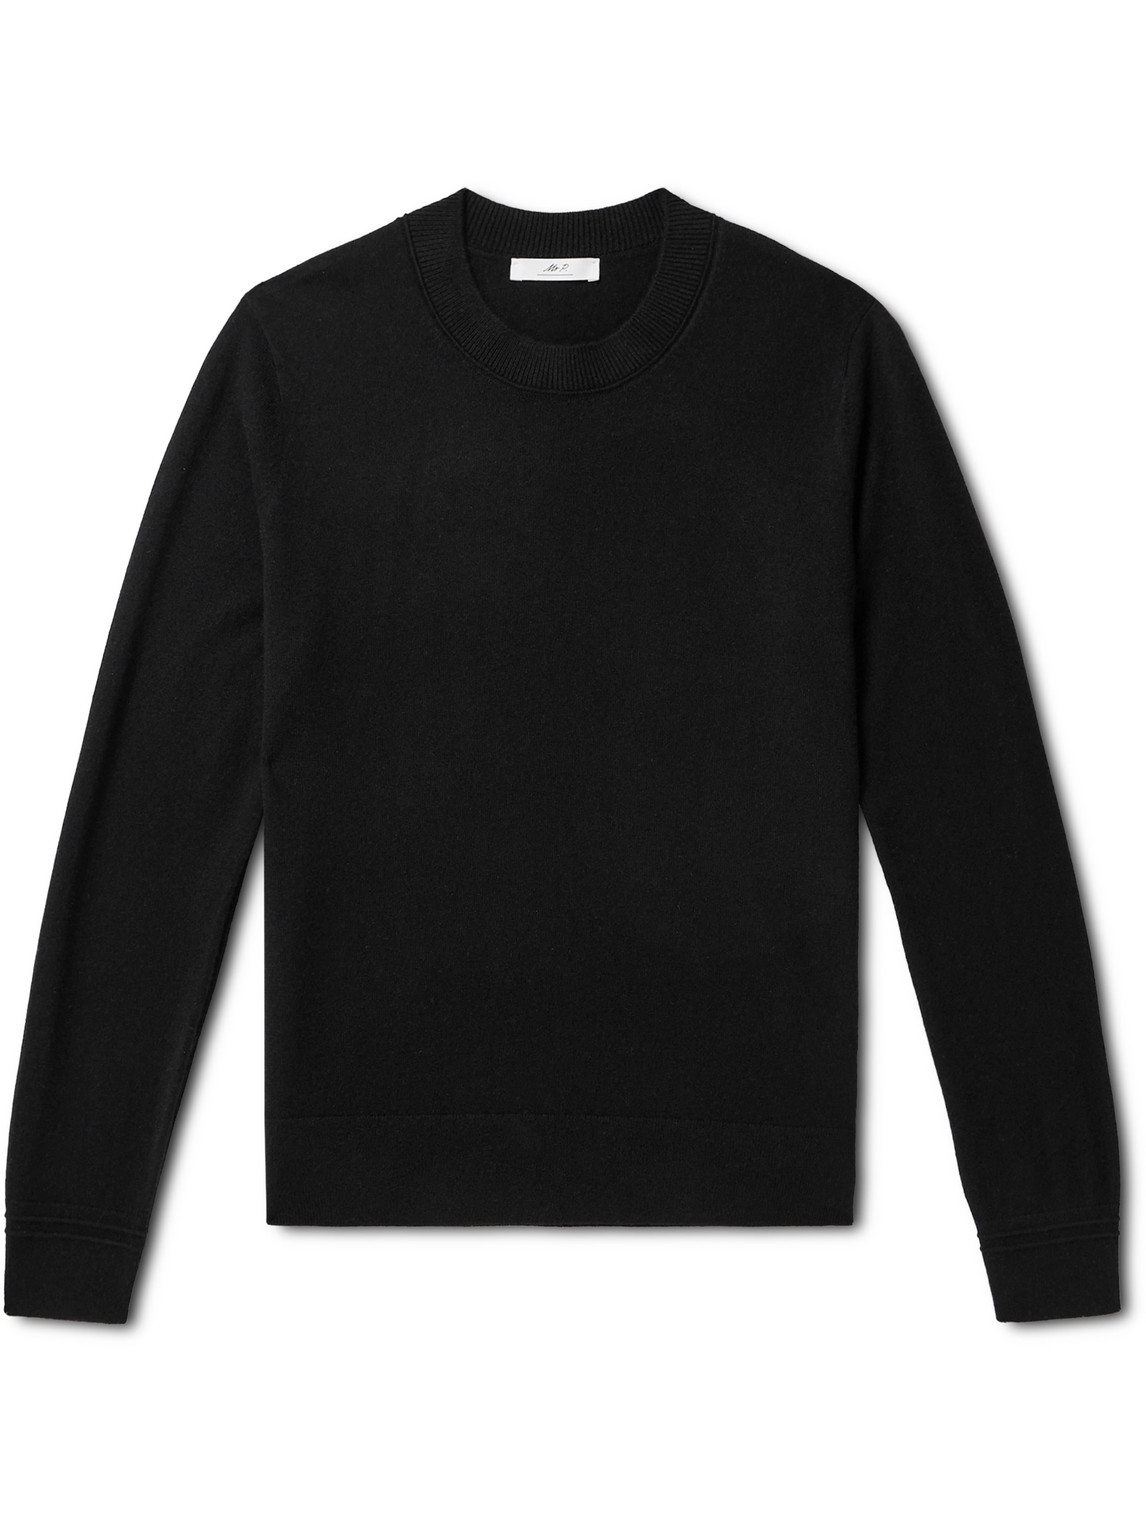 Mr P. - Curtis Cashmere Sweater - Men - Black - S von Mr P.